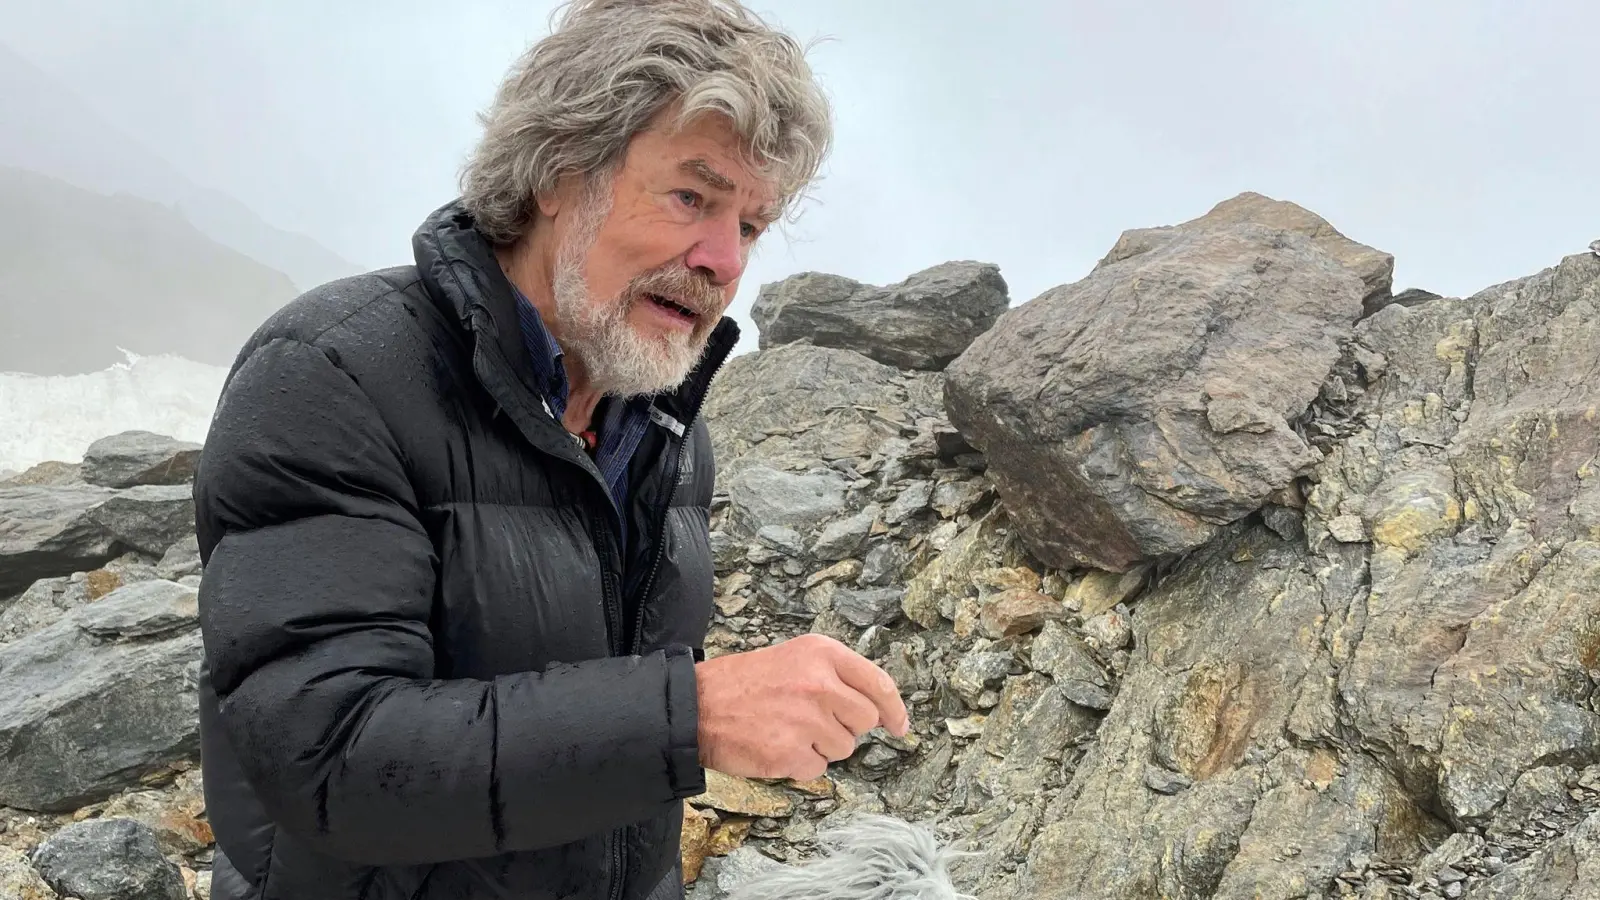 Extrem-Bergsteiger Reinhold Messner bei einem Interview am Fundort der Gletschermumie Ötzi. (Foto: Matthias Röder/dpa/Archivbild)